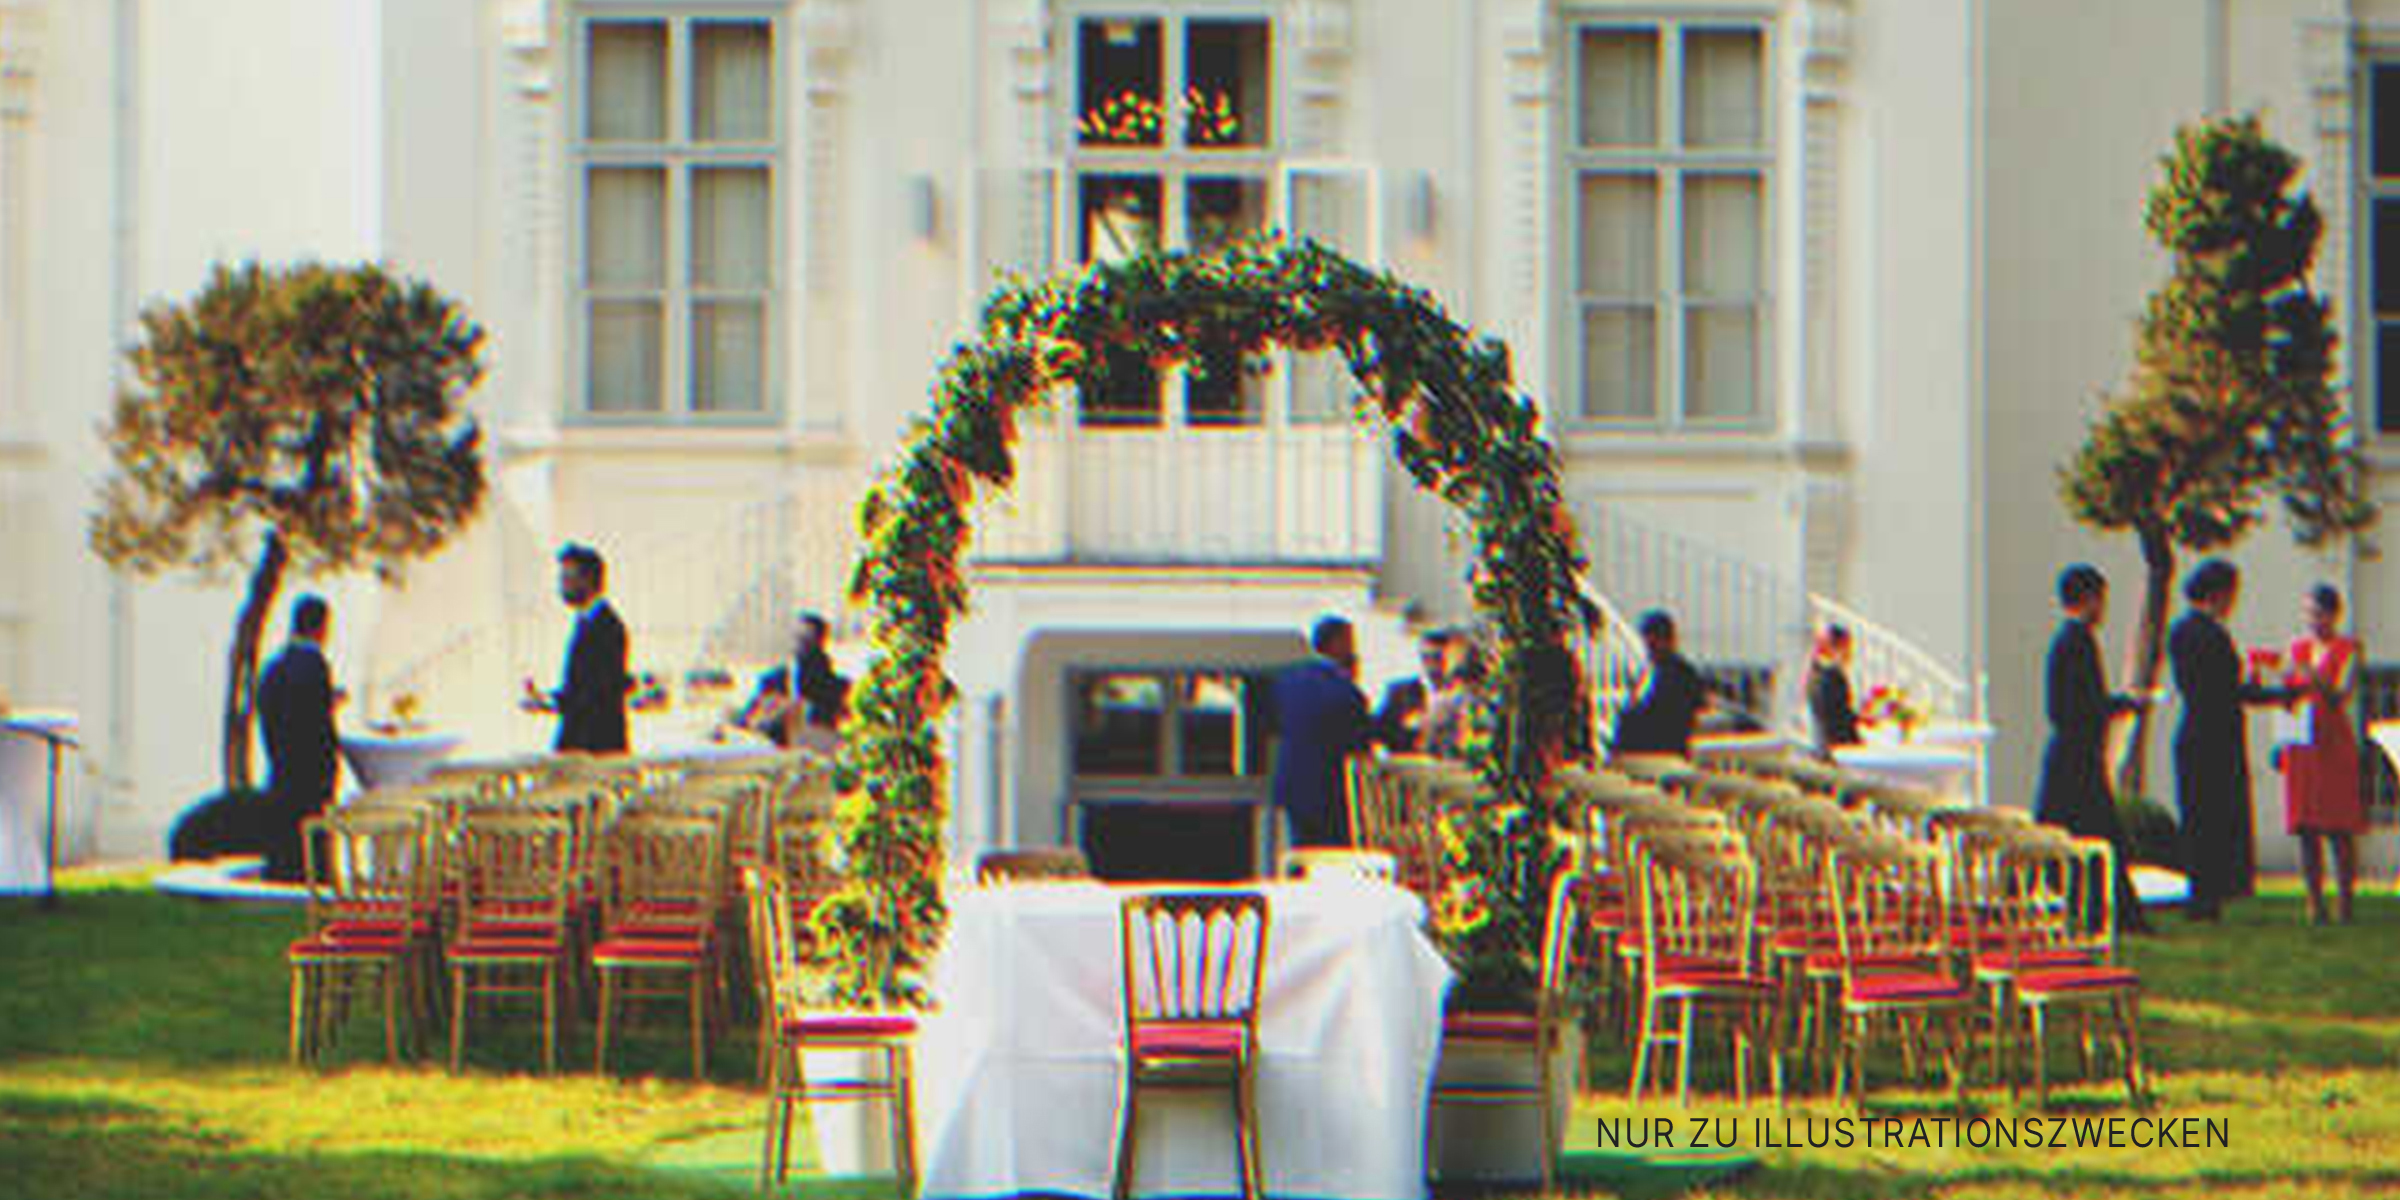 Eine Hochzeitszeremonie | Quelle: Shutterstock